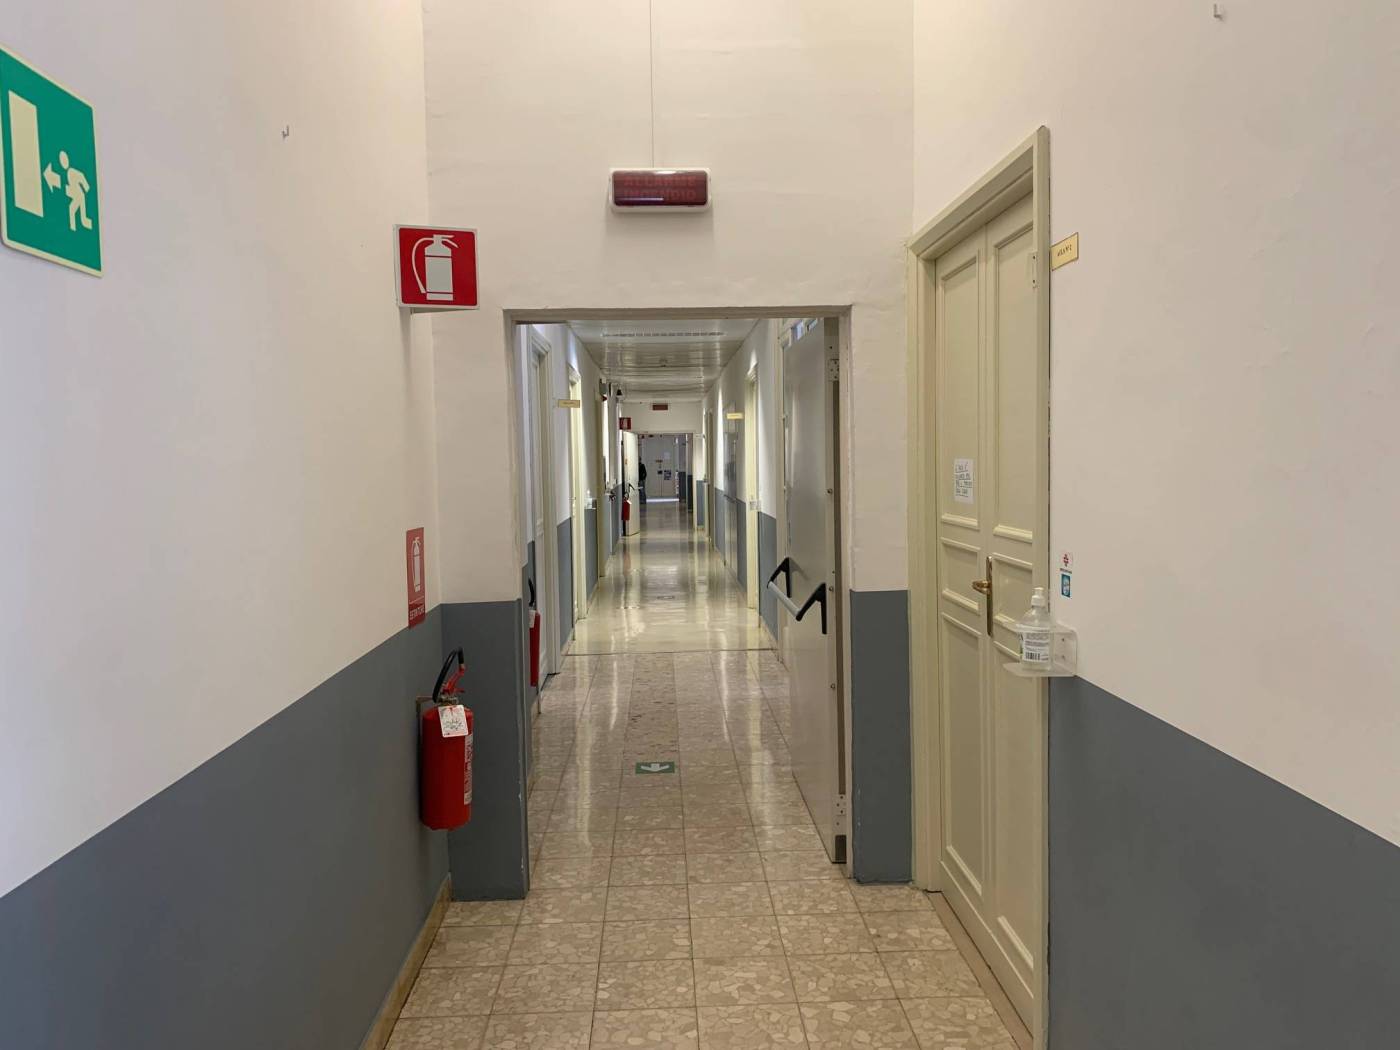 Corridoio collegamento stanze/uffici